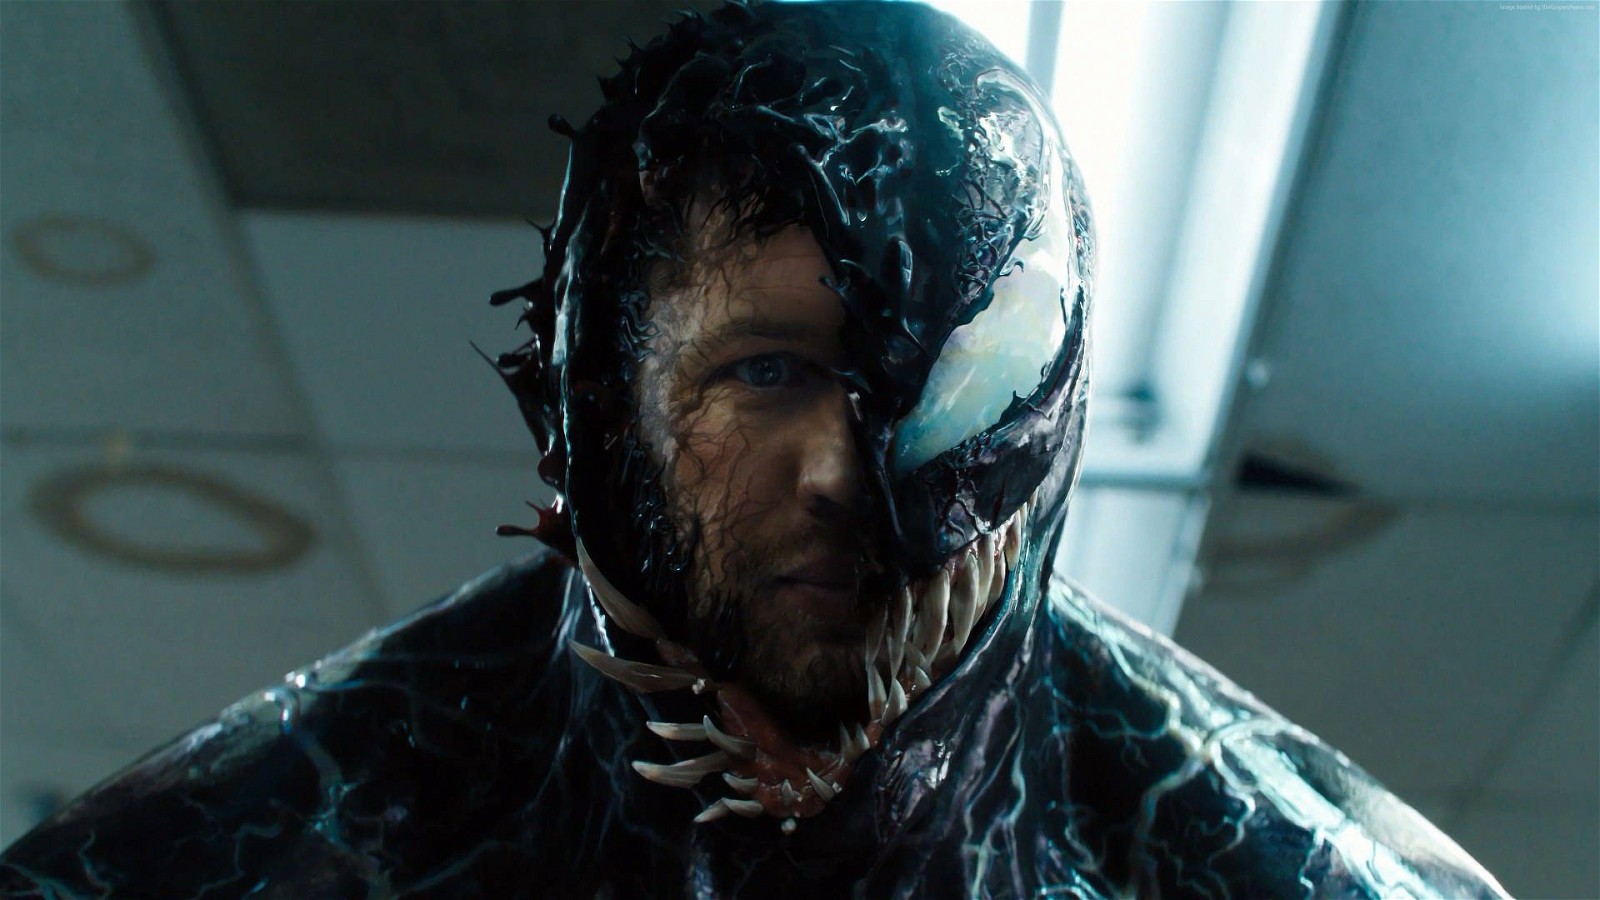 Tom Hardy's Eddie Brock / Venom will return in the upcoming film Venom 3